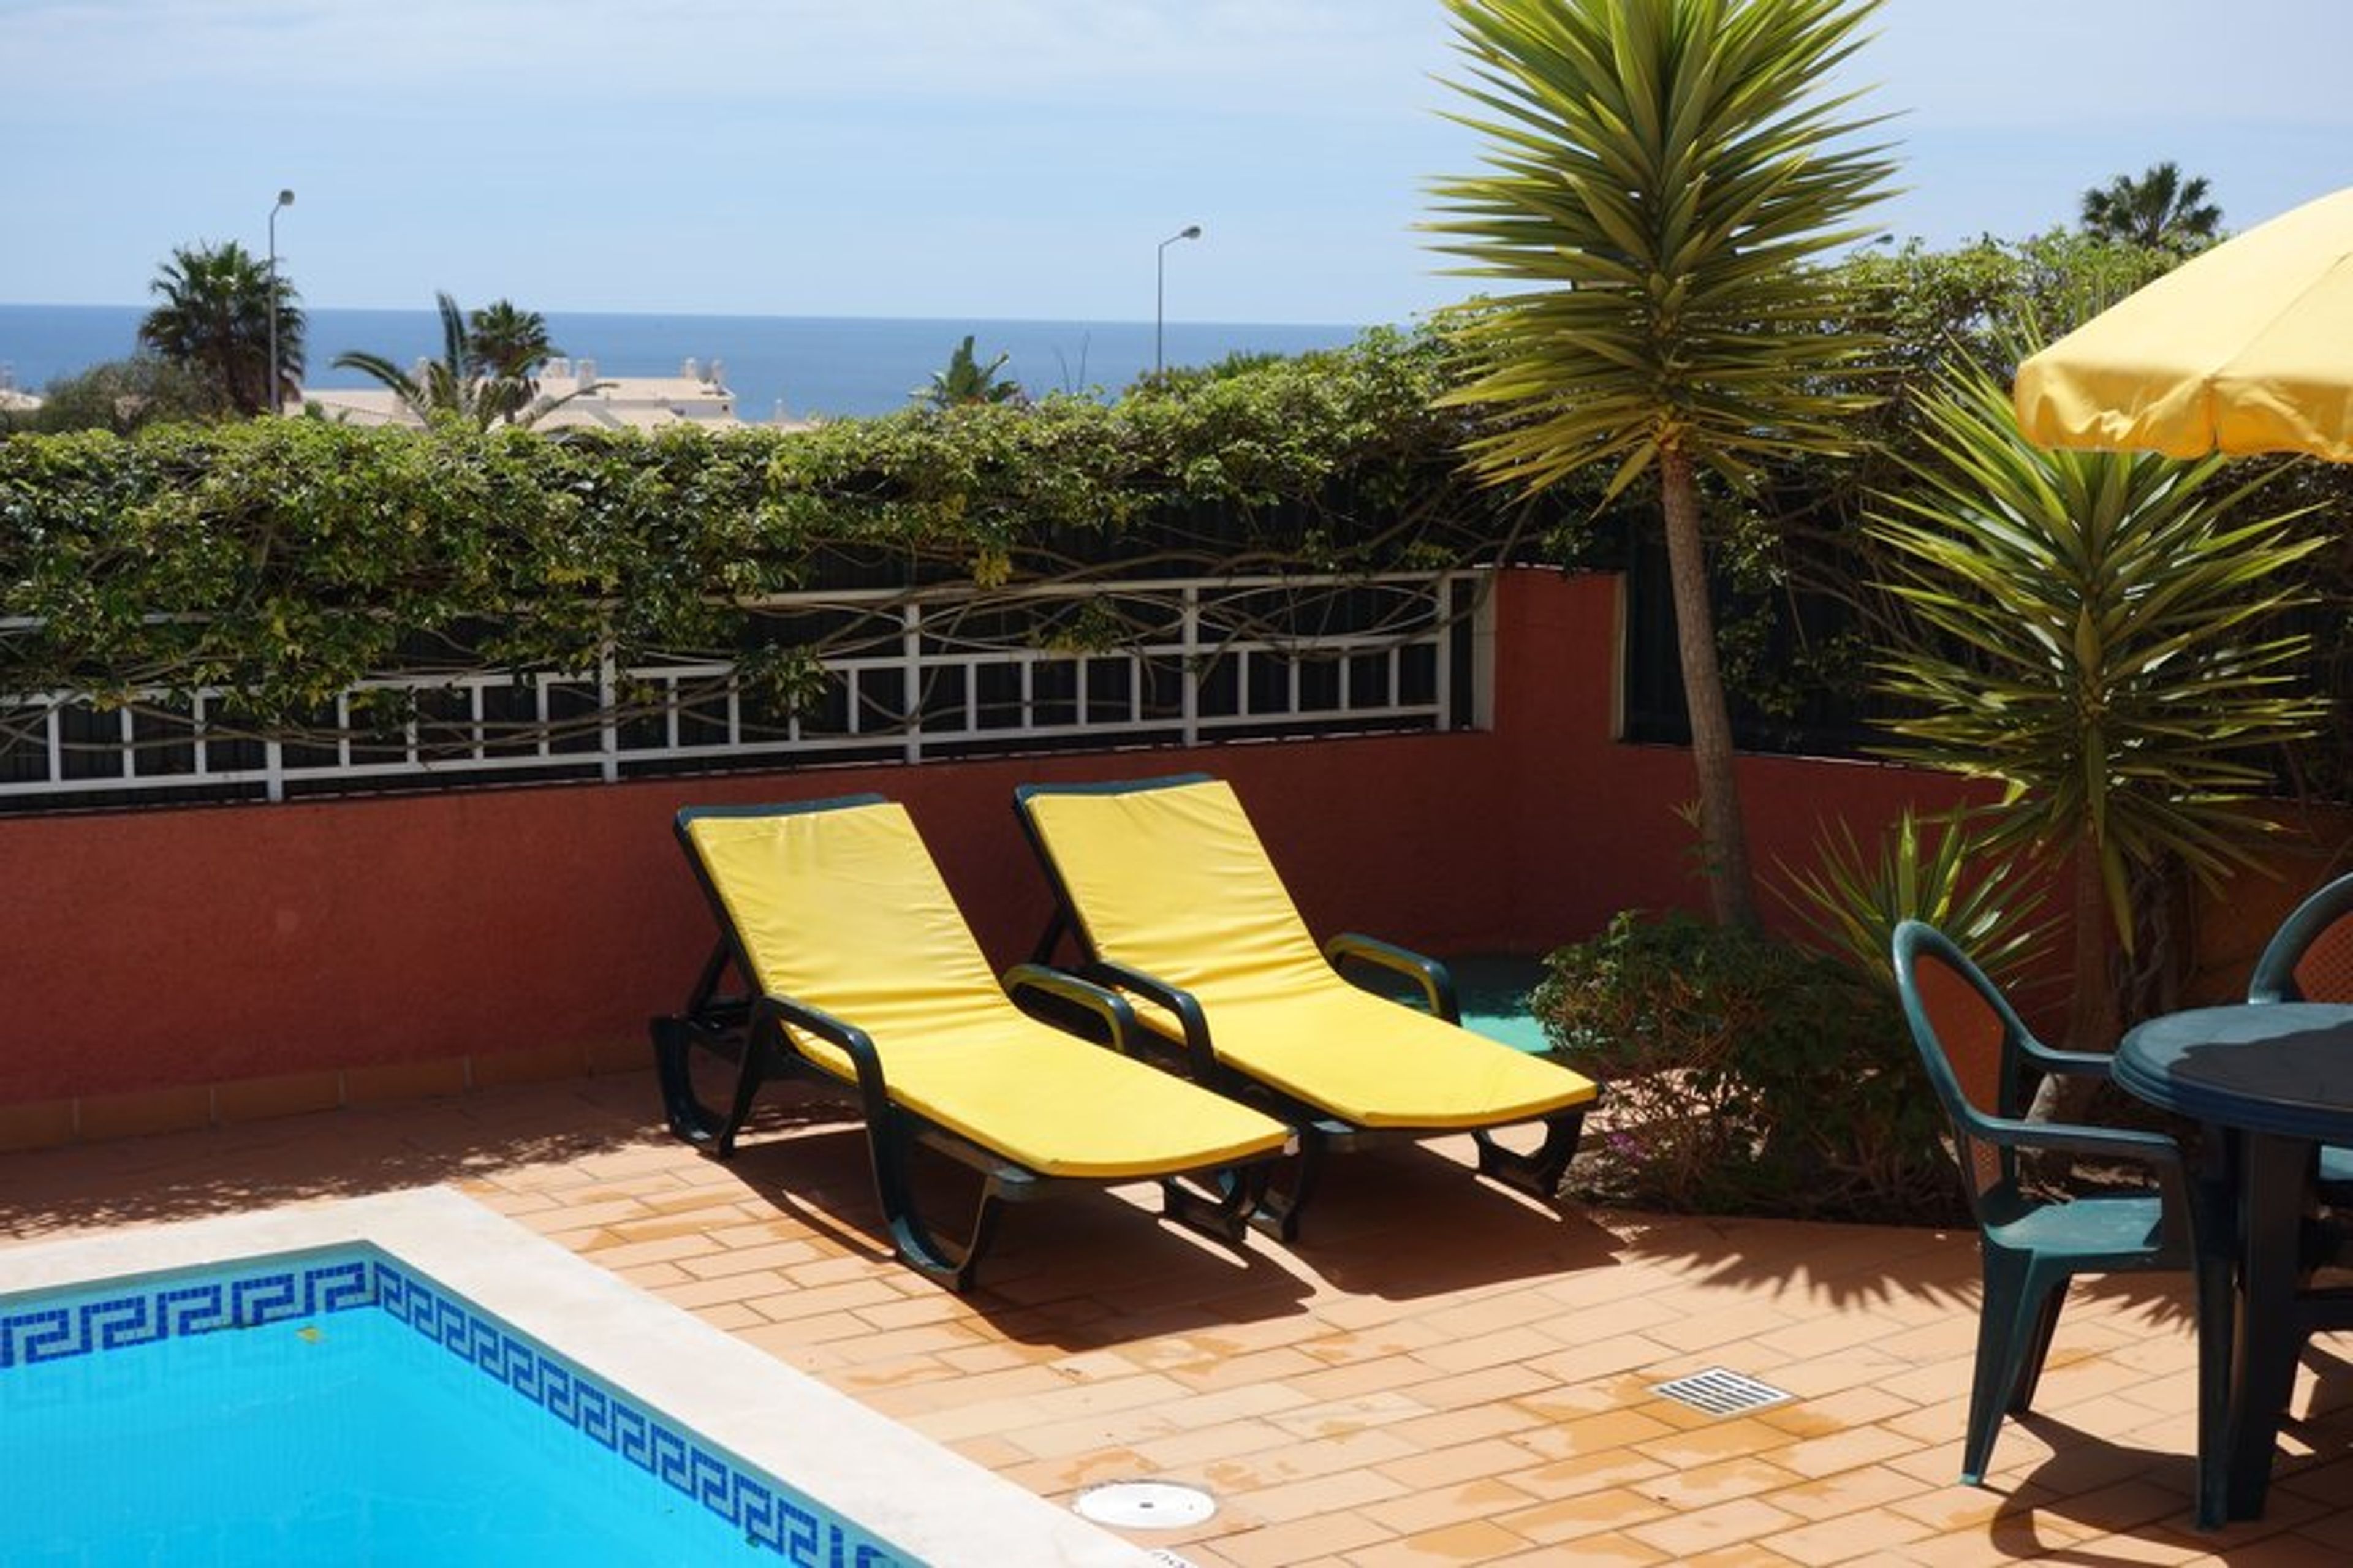 Casa Encantadora - sea view from patio
